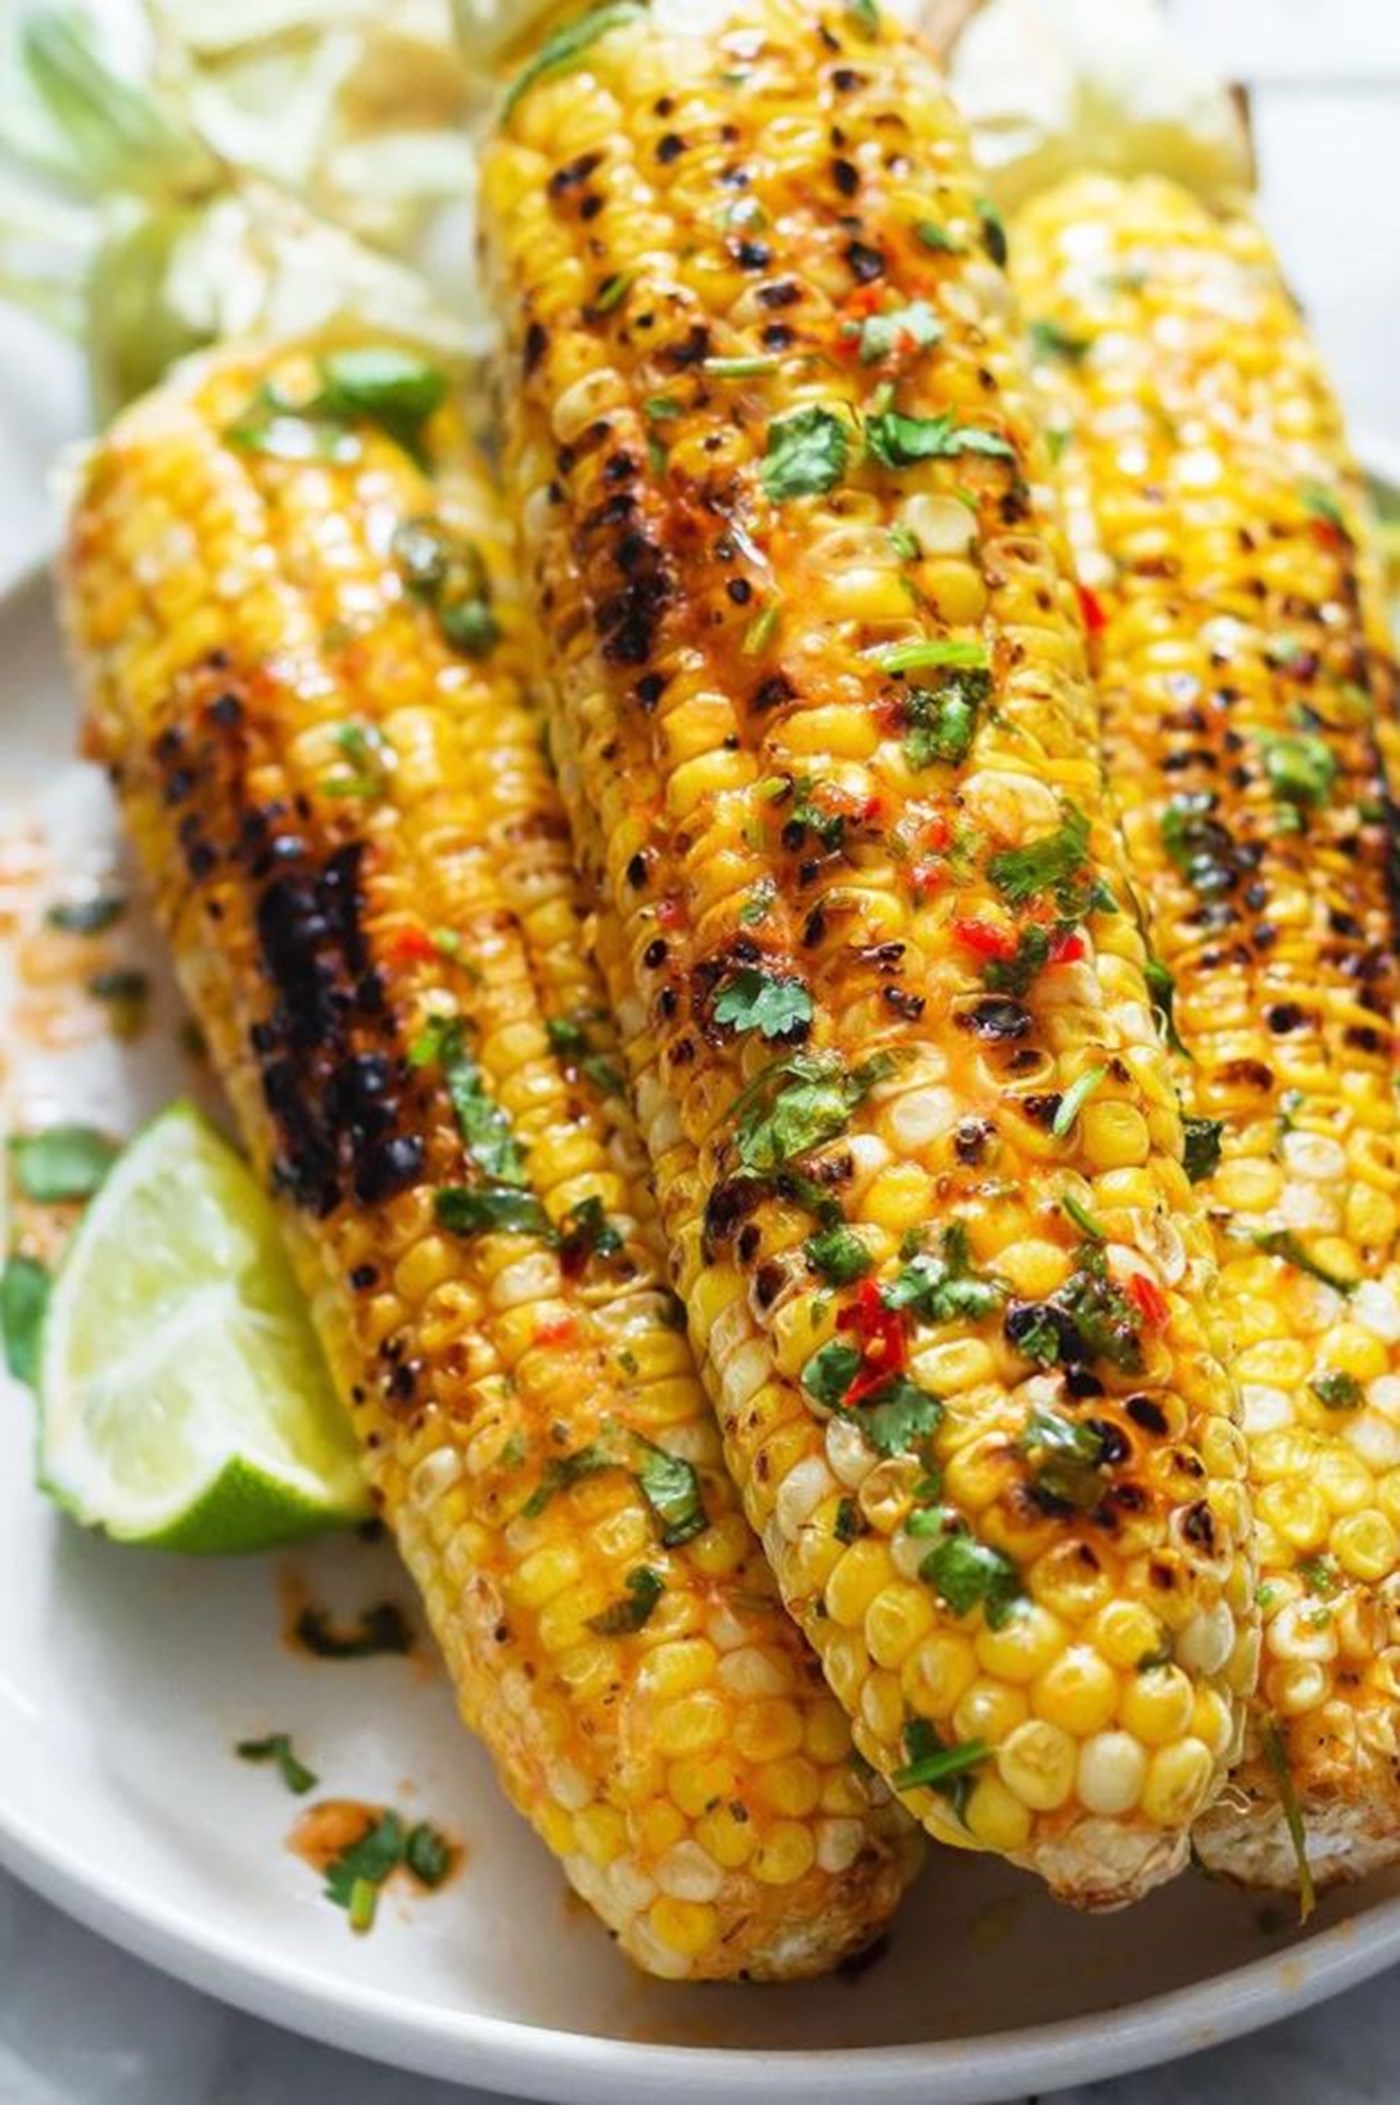 Рецепт из свежей кукурузы